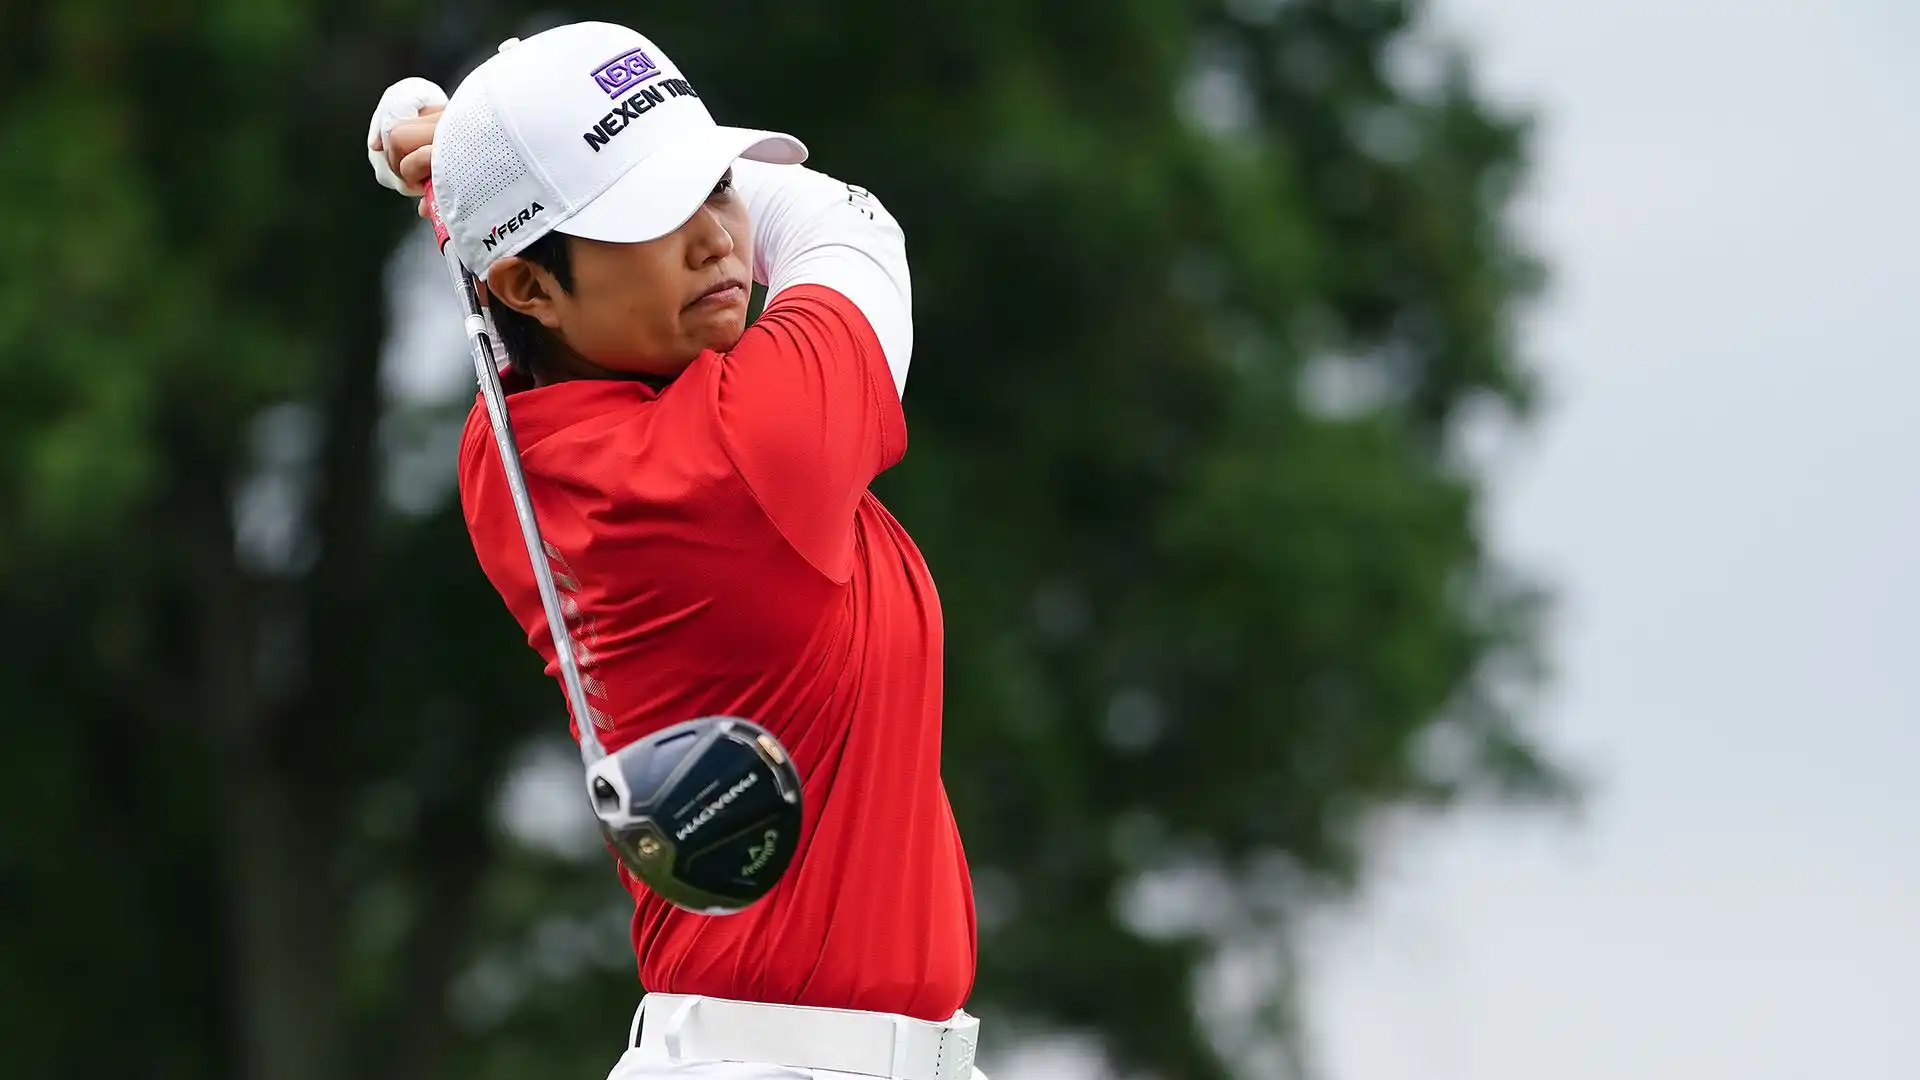 Haru Nomura: 3 vittorie in LPGA. In Corea del Sud da quando aveva 5 anni, ha scelto la nazionalità giapponese